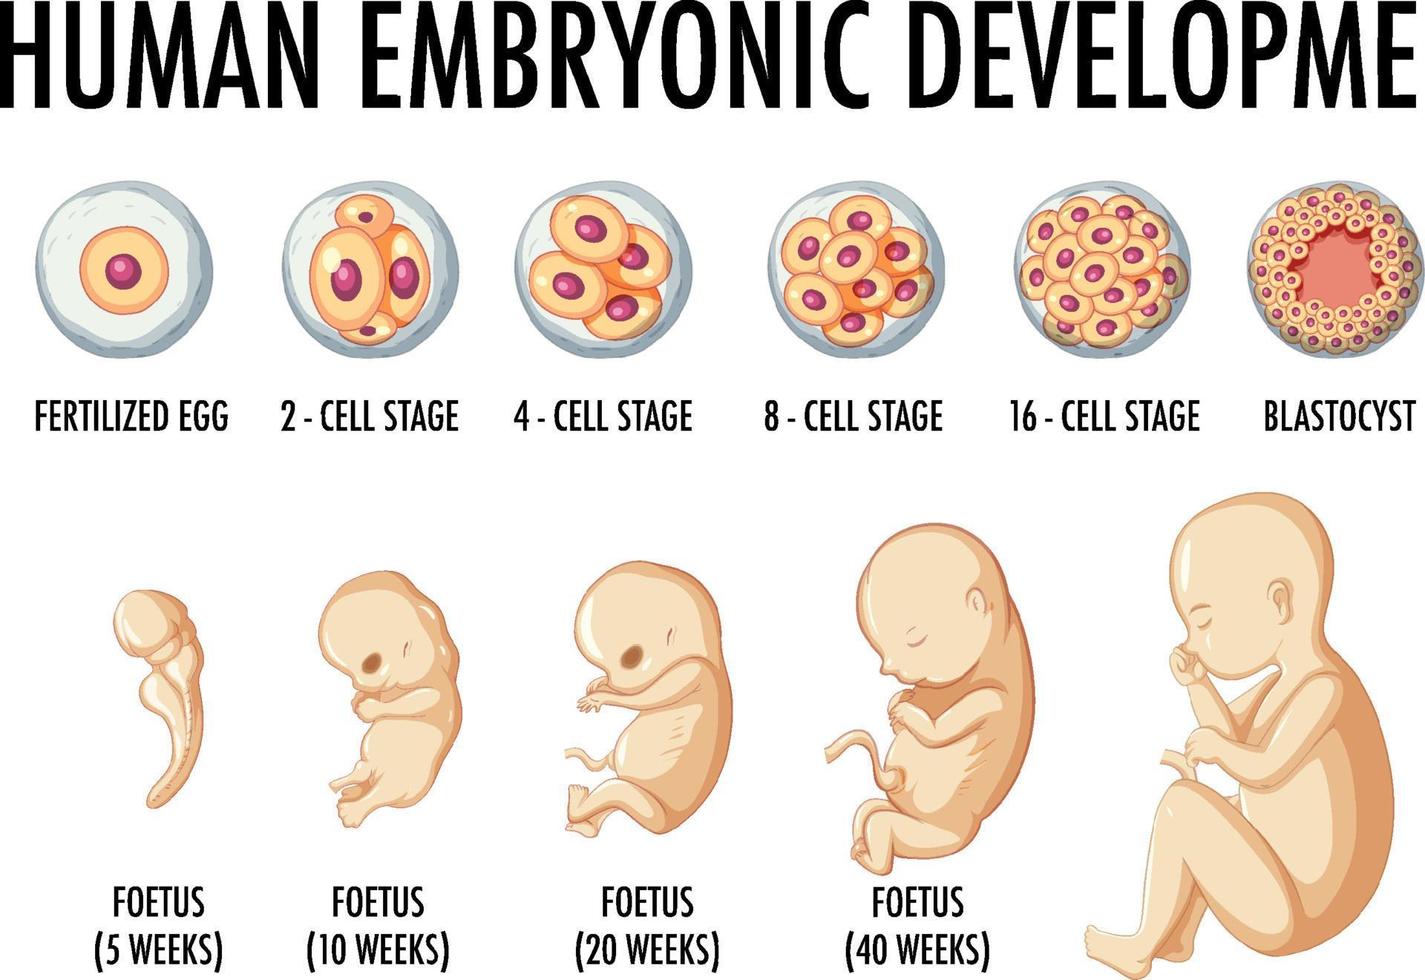 menschliche embryonale entwicklung in der menschlichen infografik vektor